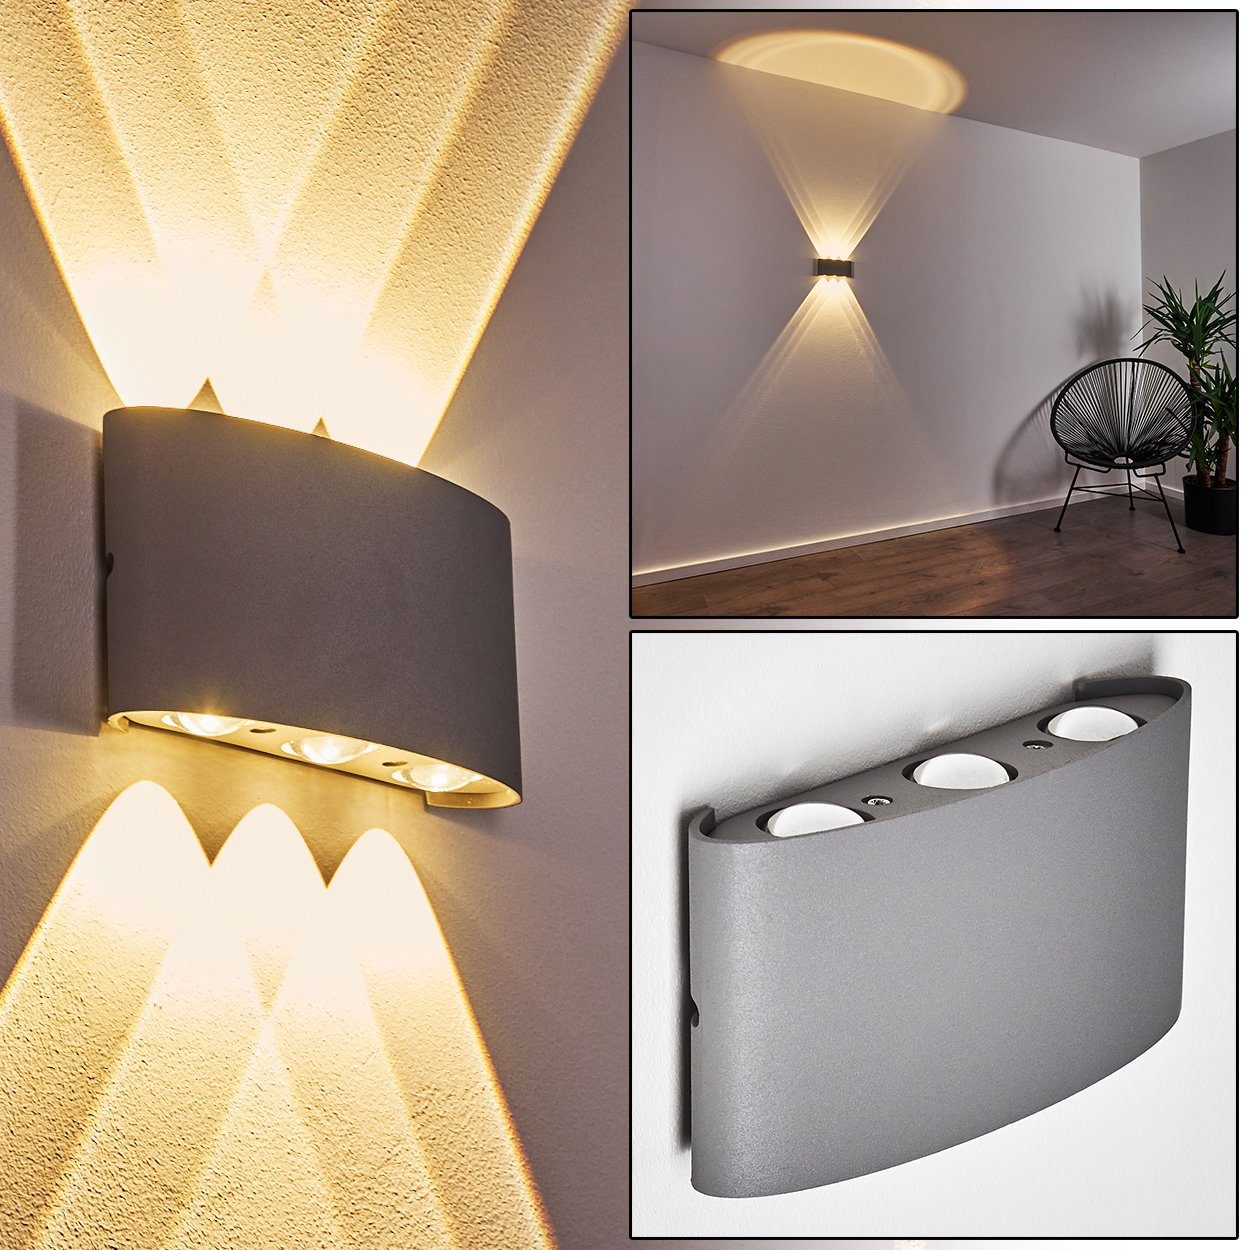 LED Design Wand Strahler Up Down Chrom Ringe Lampe Wohn Zimmer Leuchte satiniert 